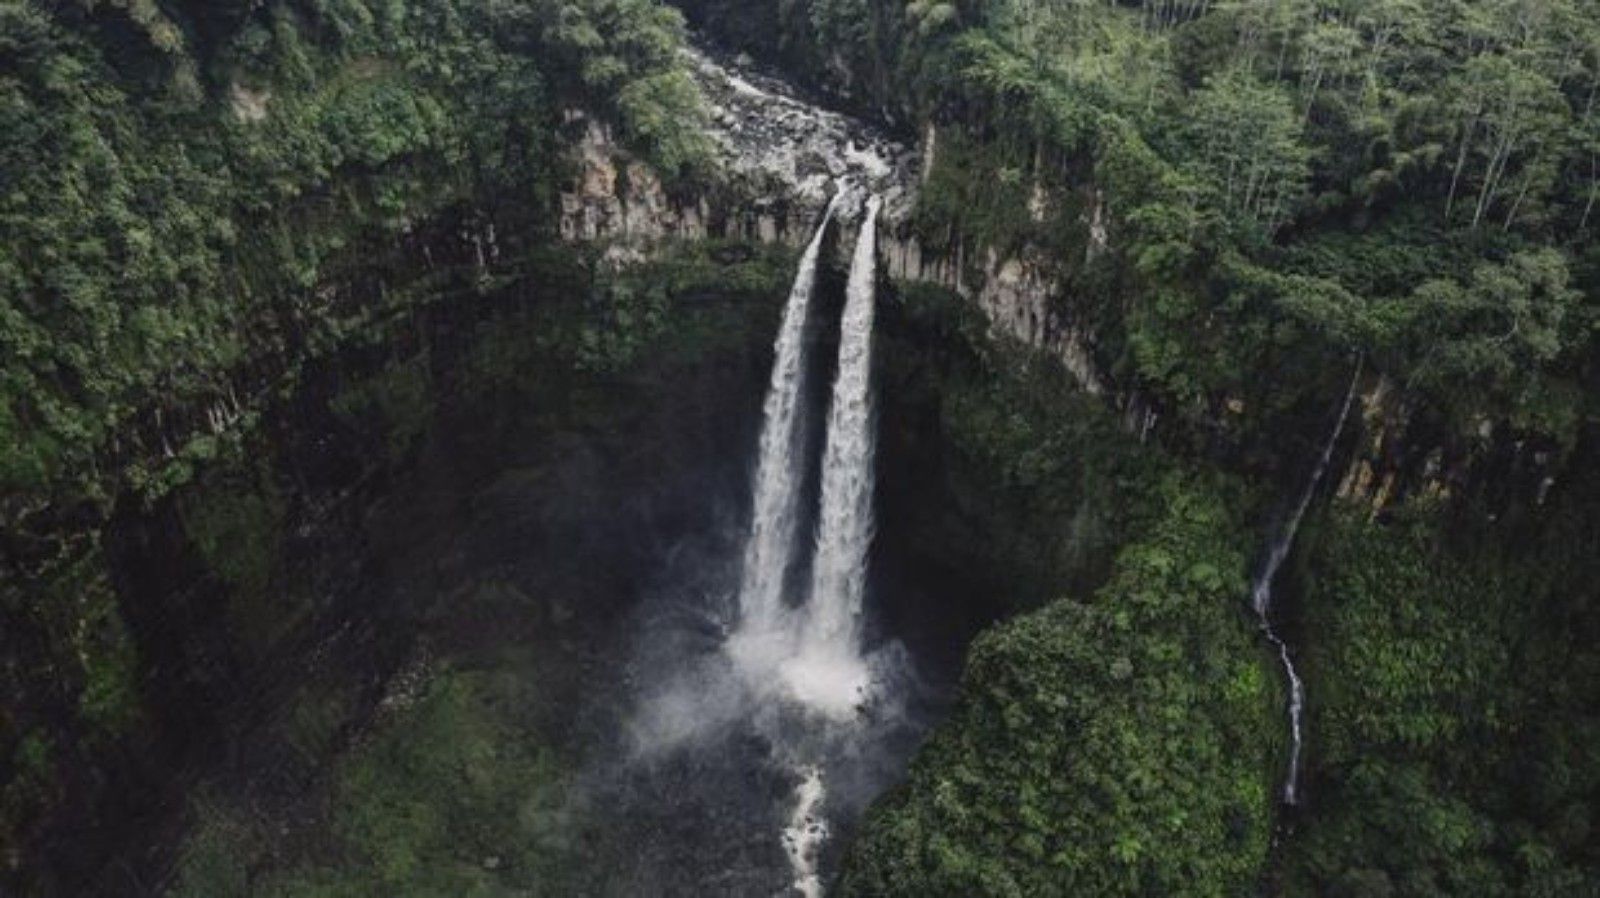 Air Terjun Madakaripura merupakan salah satu tempat wisata di Jawa Timur yang belum terkenal di kalangan wisatawan.